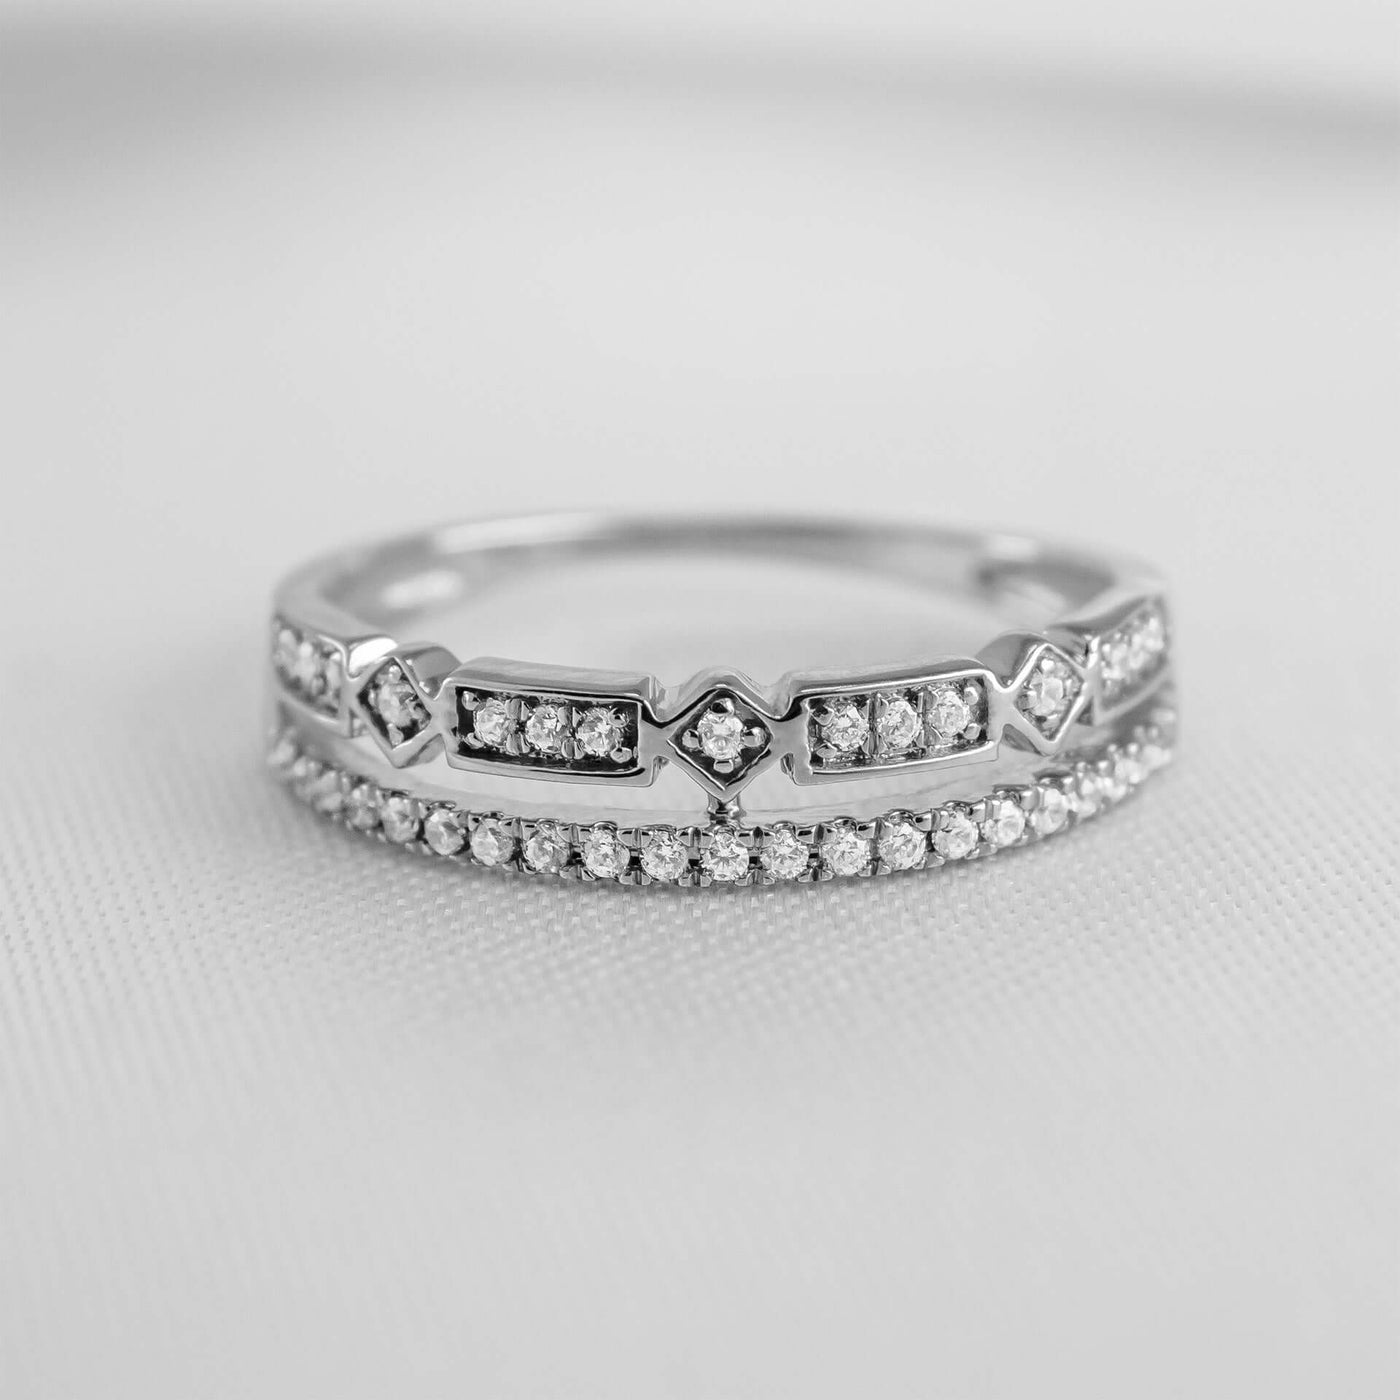 The Rene Diamond Wedding Ring | Lisa Robin#color_10k-white-gold